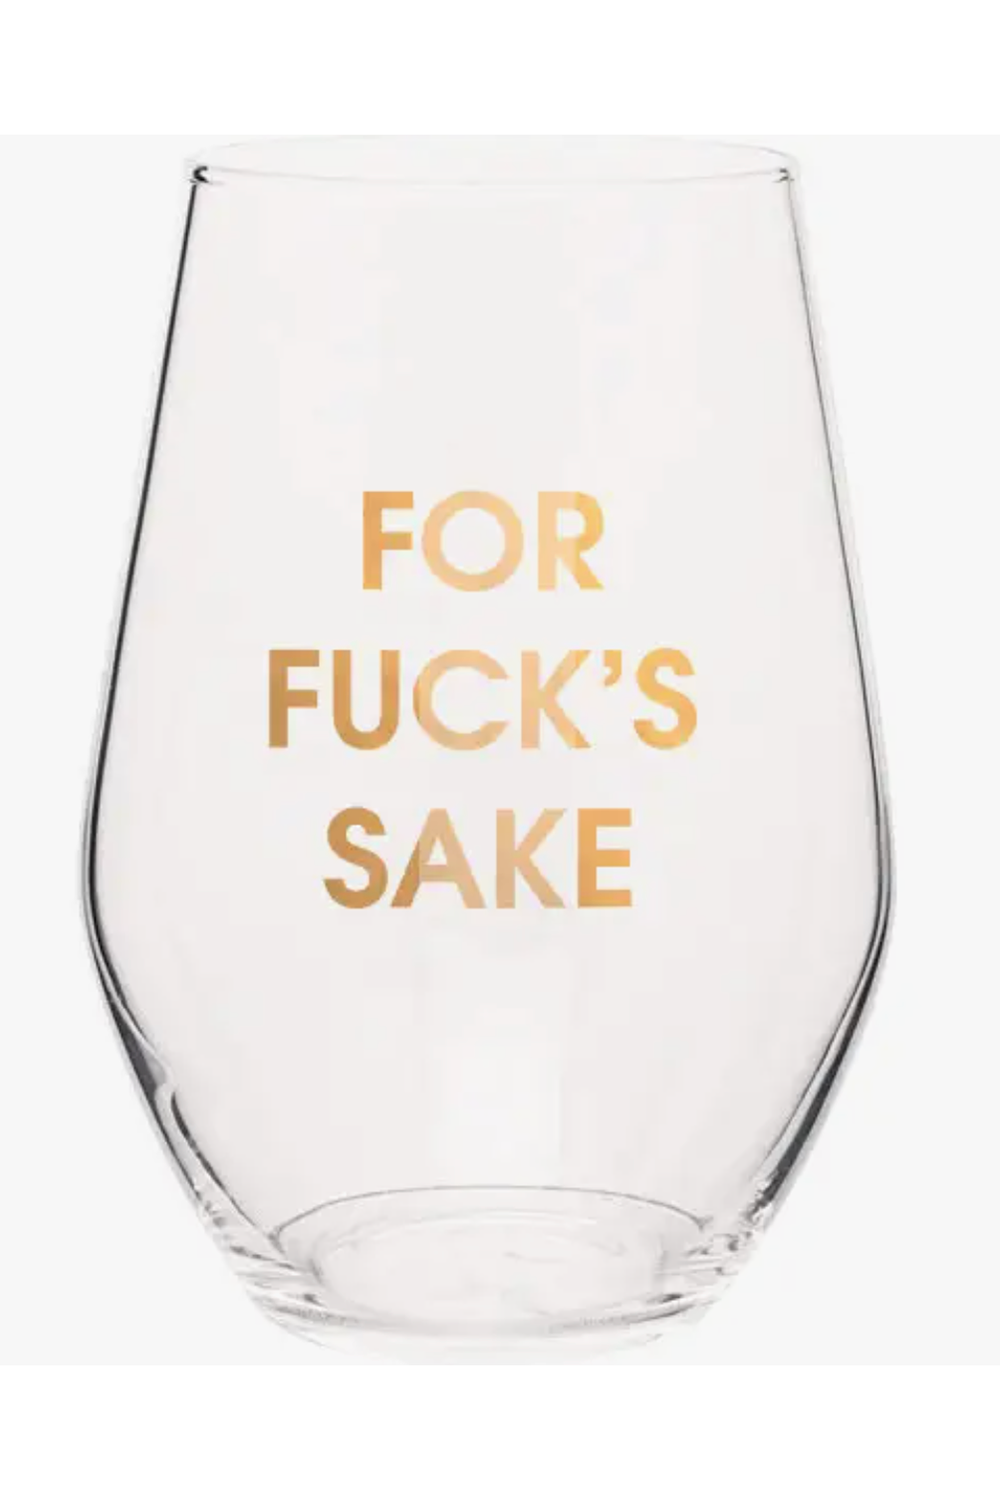 Gold Foil Wine Glass - For Fuck's Sake